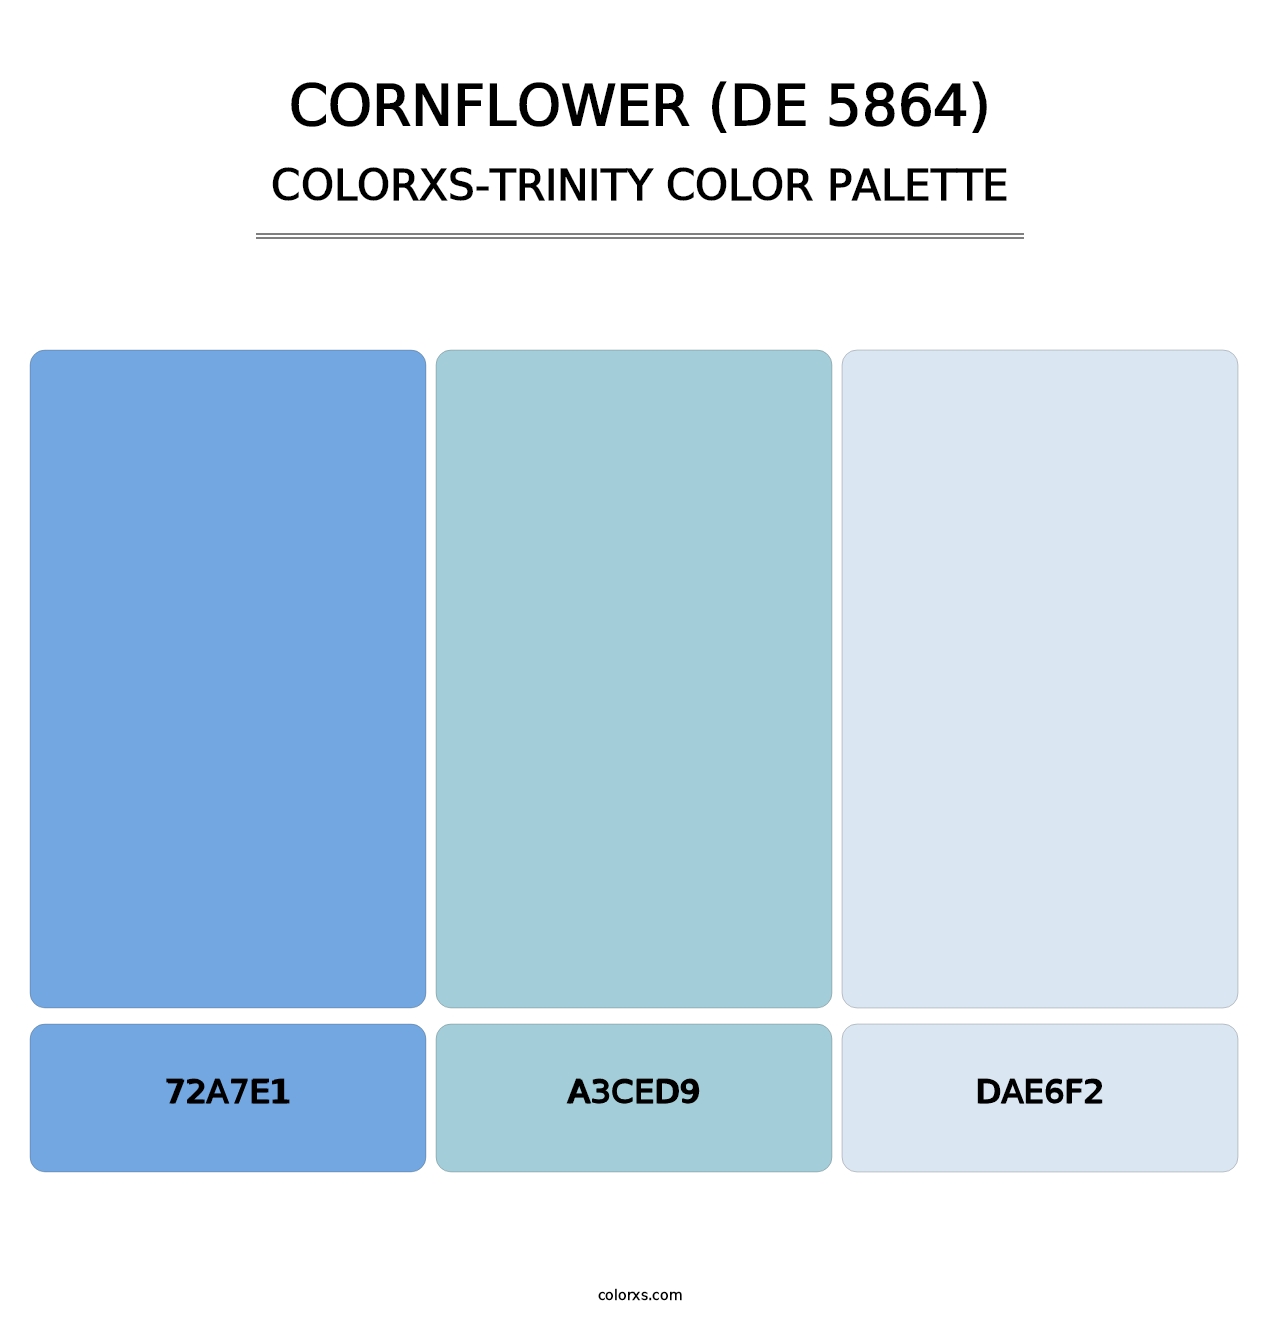 Cornflower (DE 5864) - Colorxs Trinity Palette